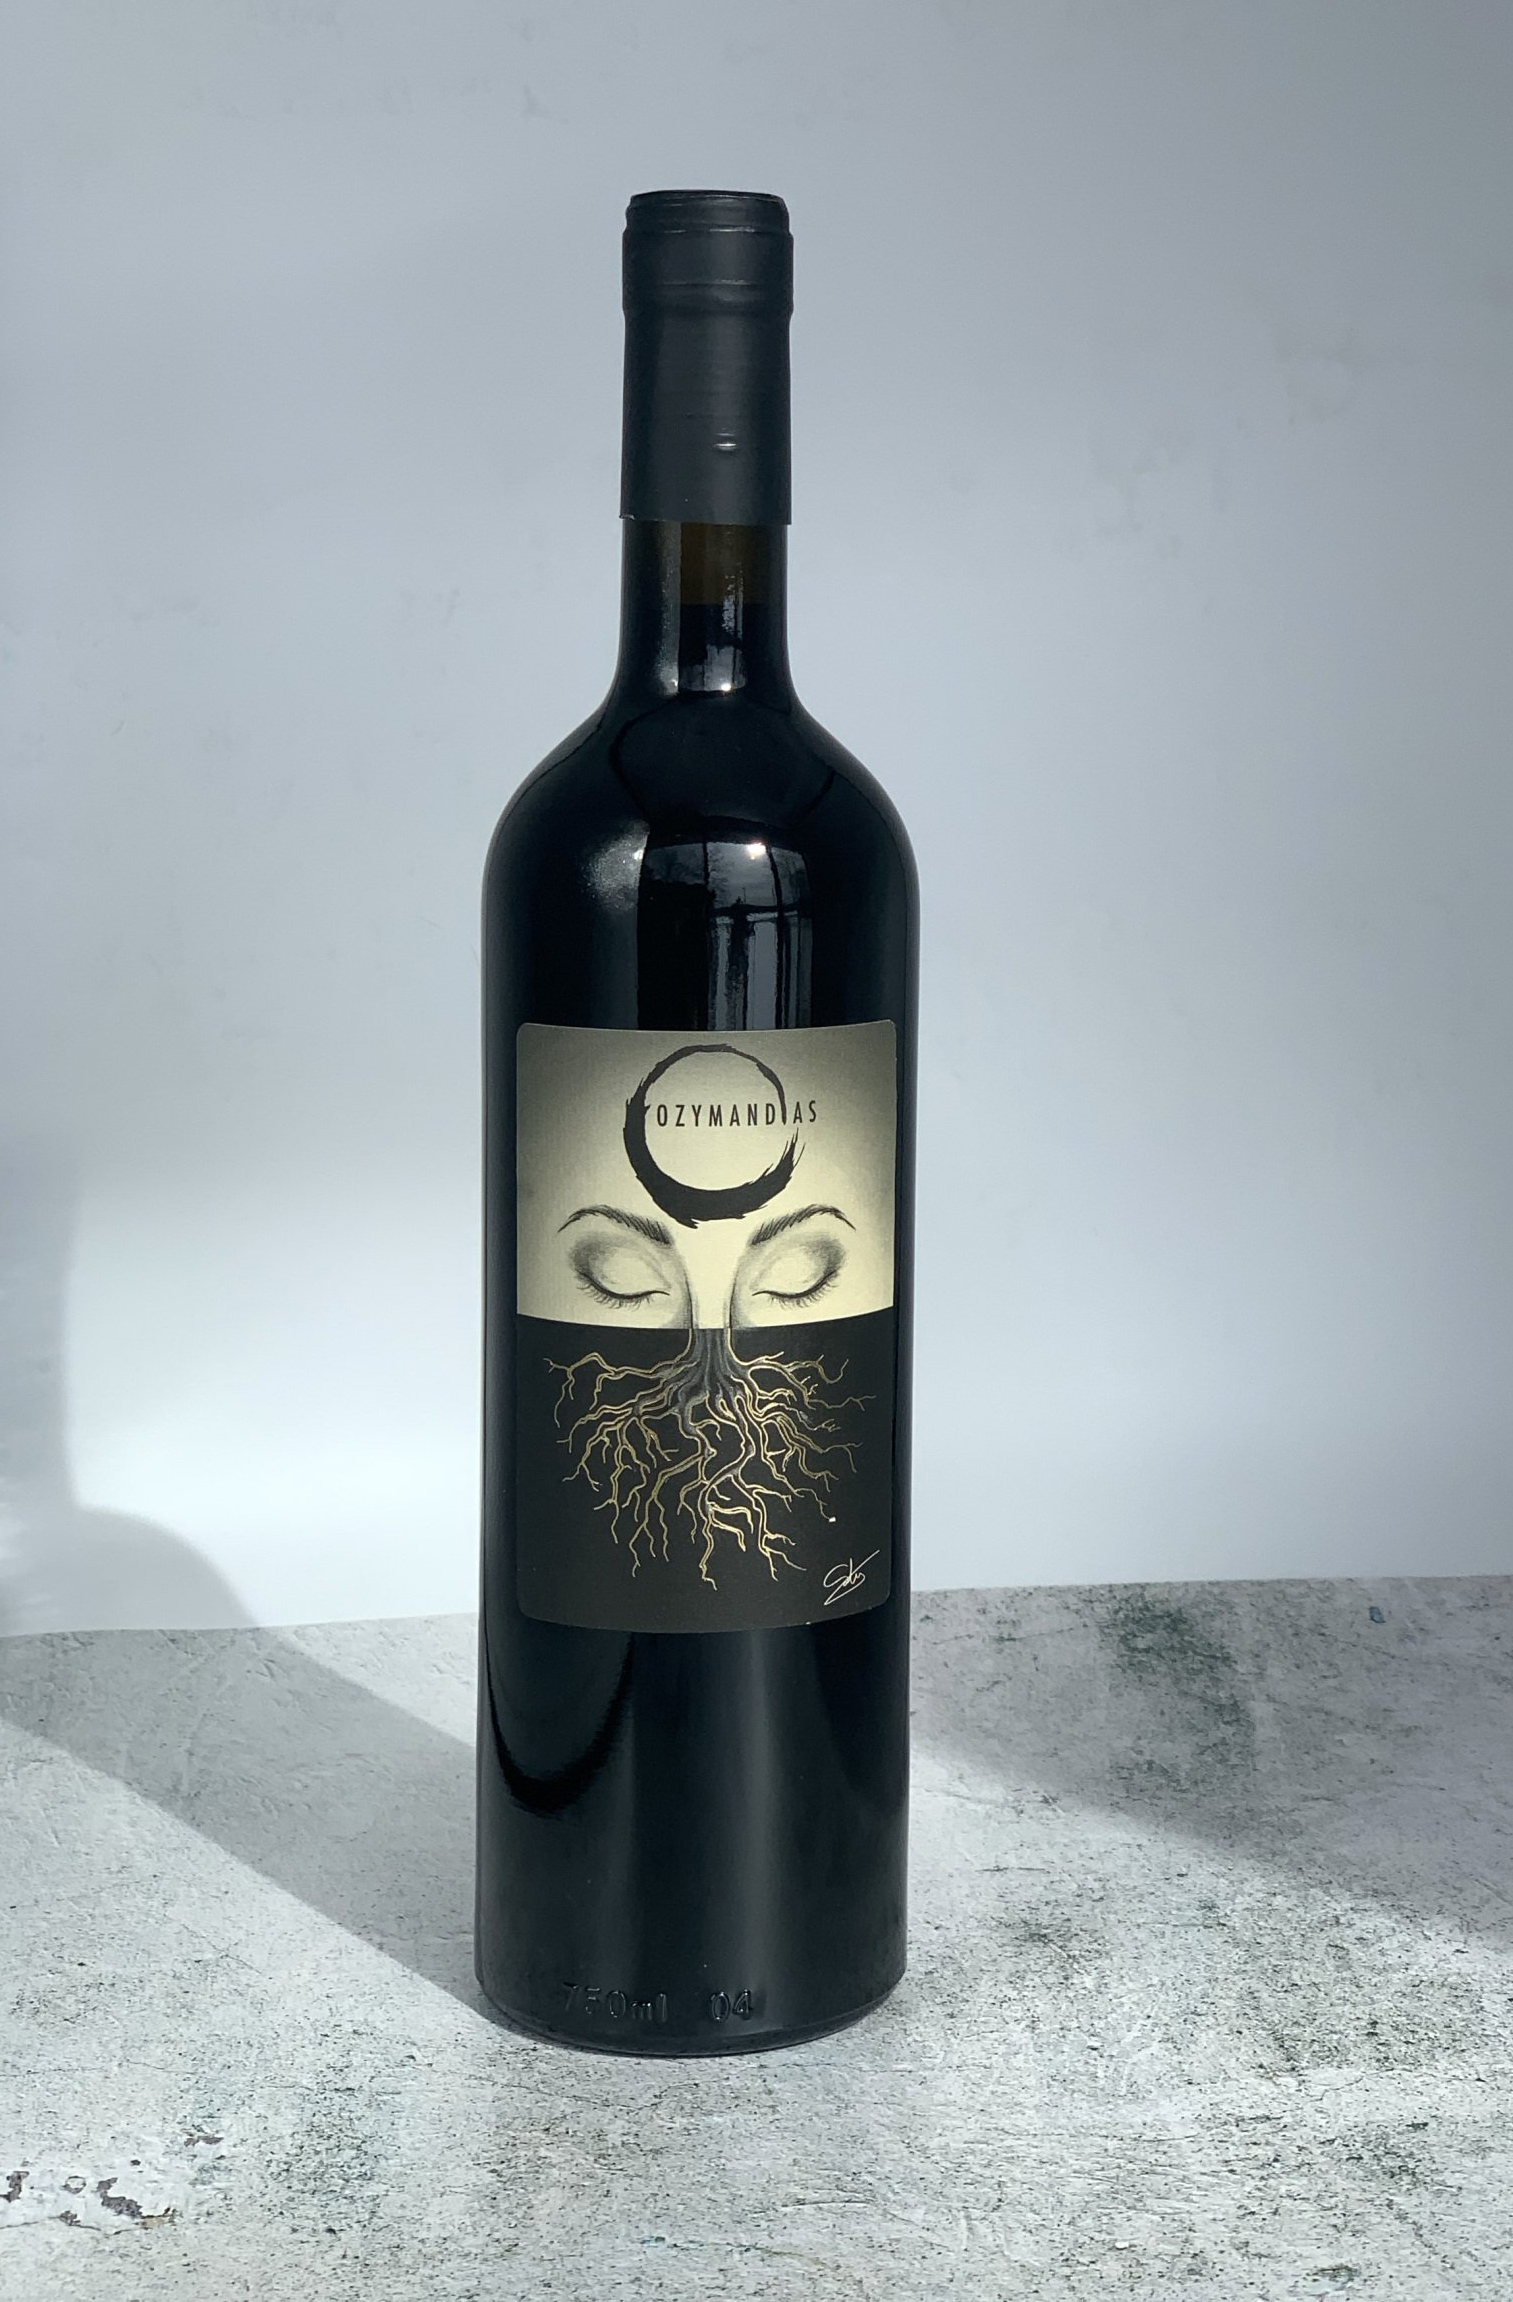 Ozymandias wine label